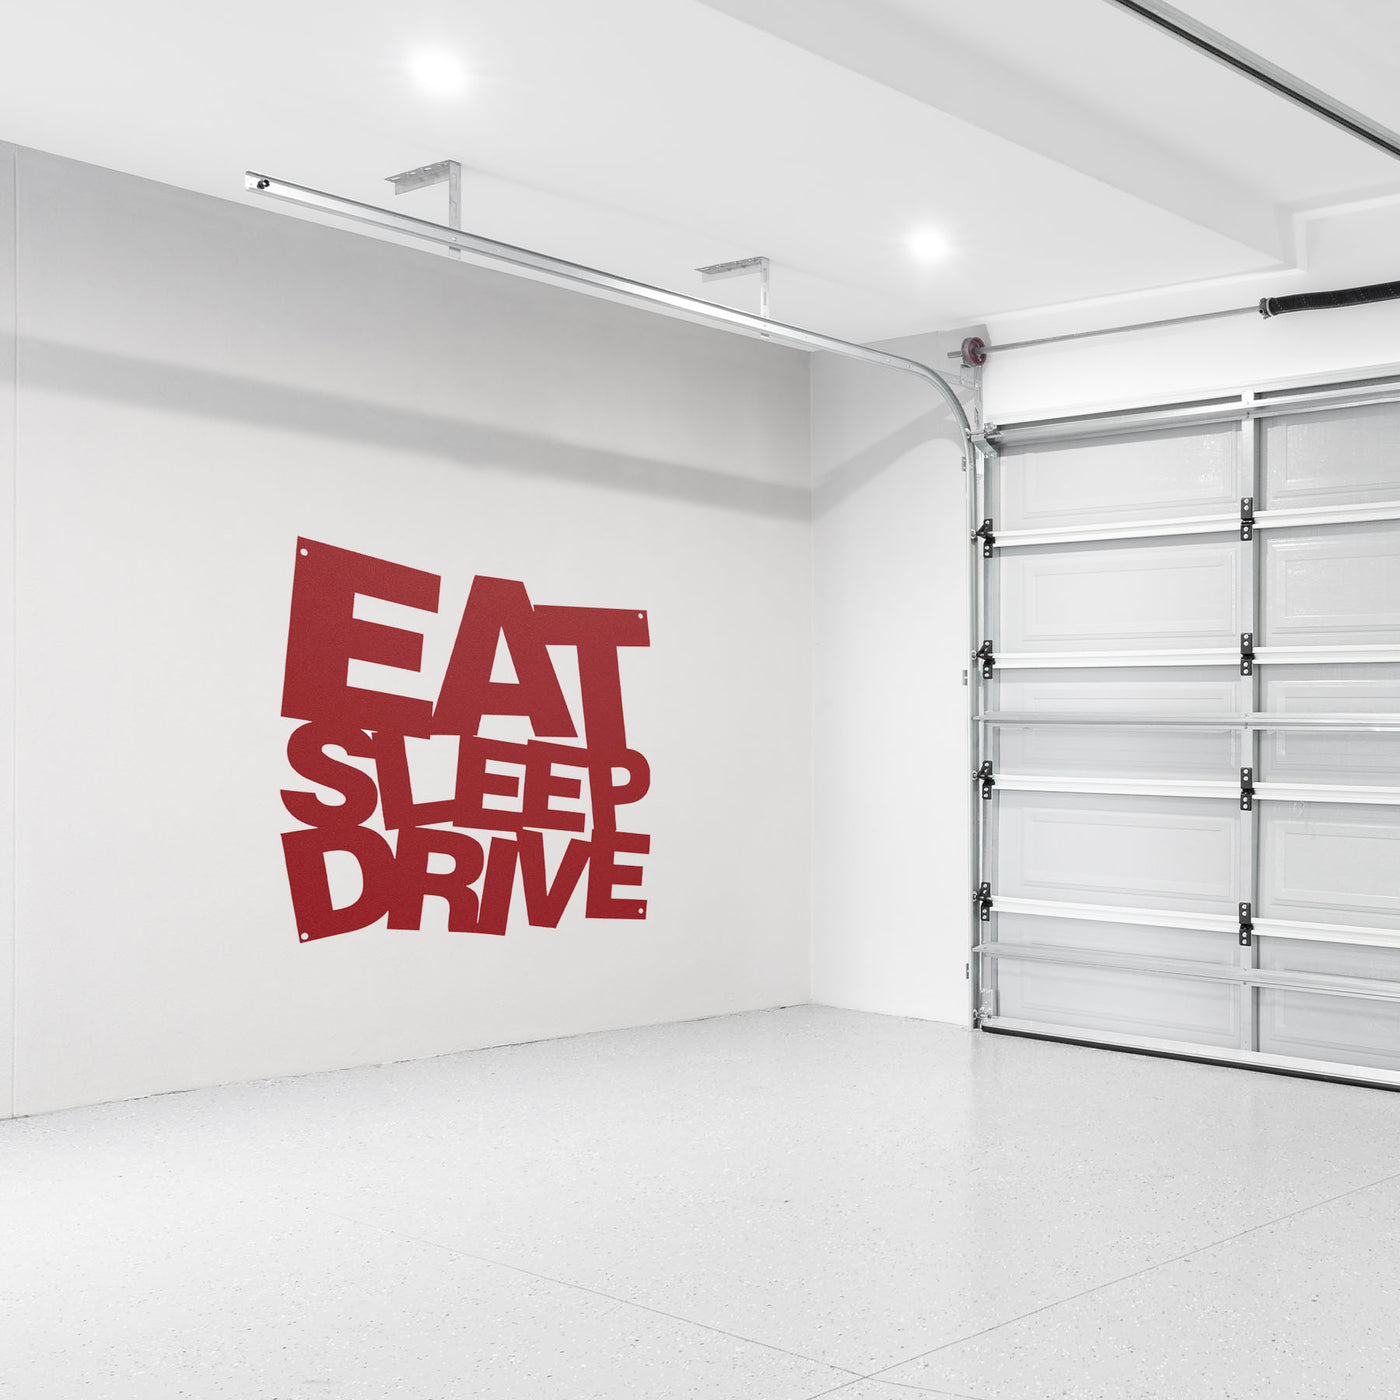 EAT SLEEP DRIVE Metal Wall Art